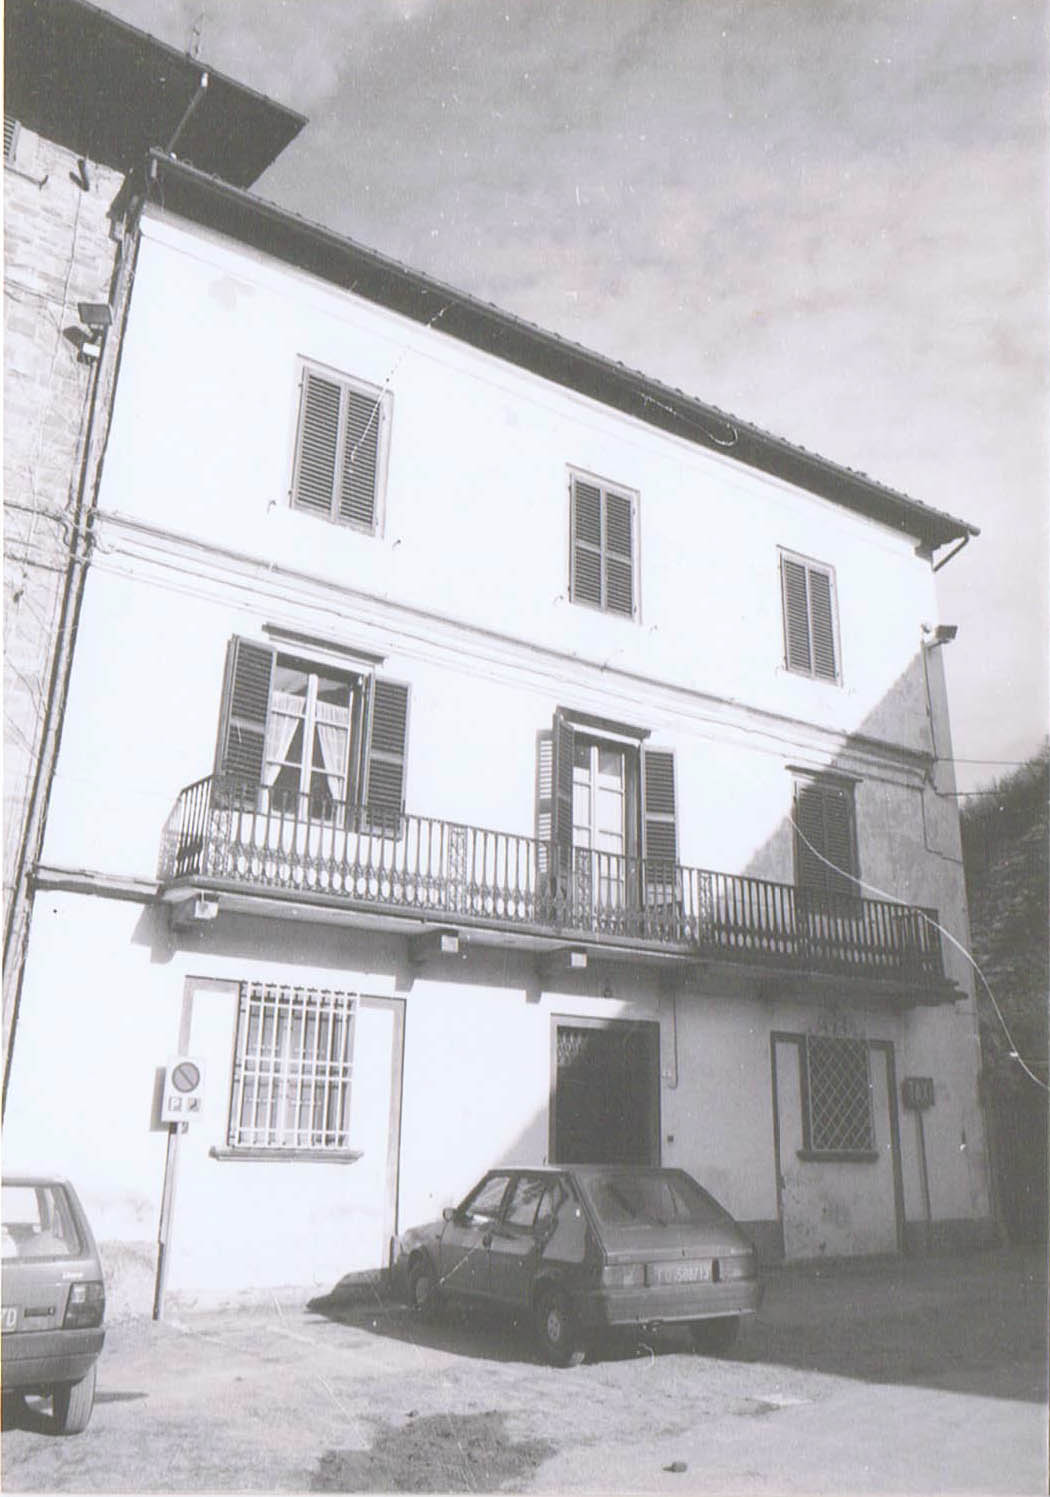 Ex Convento delle Clarisse del SS. Sacramento (convento, delle Clarisse) - Bagno di Romagna (FC) 